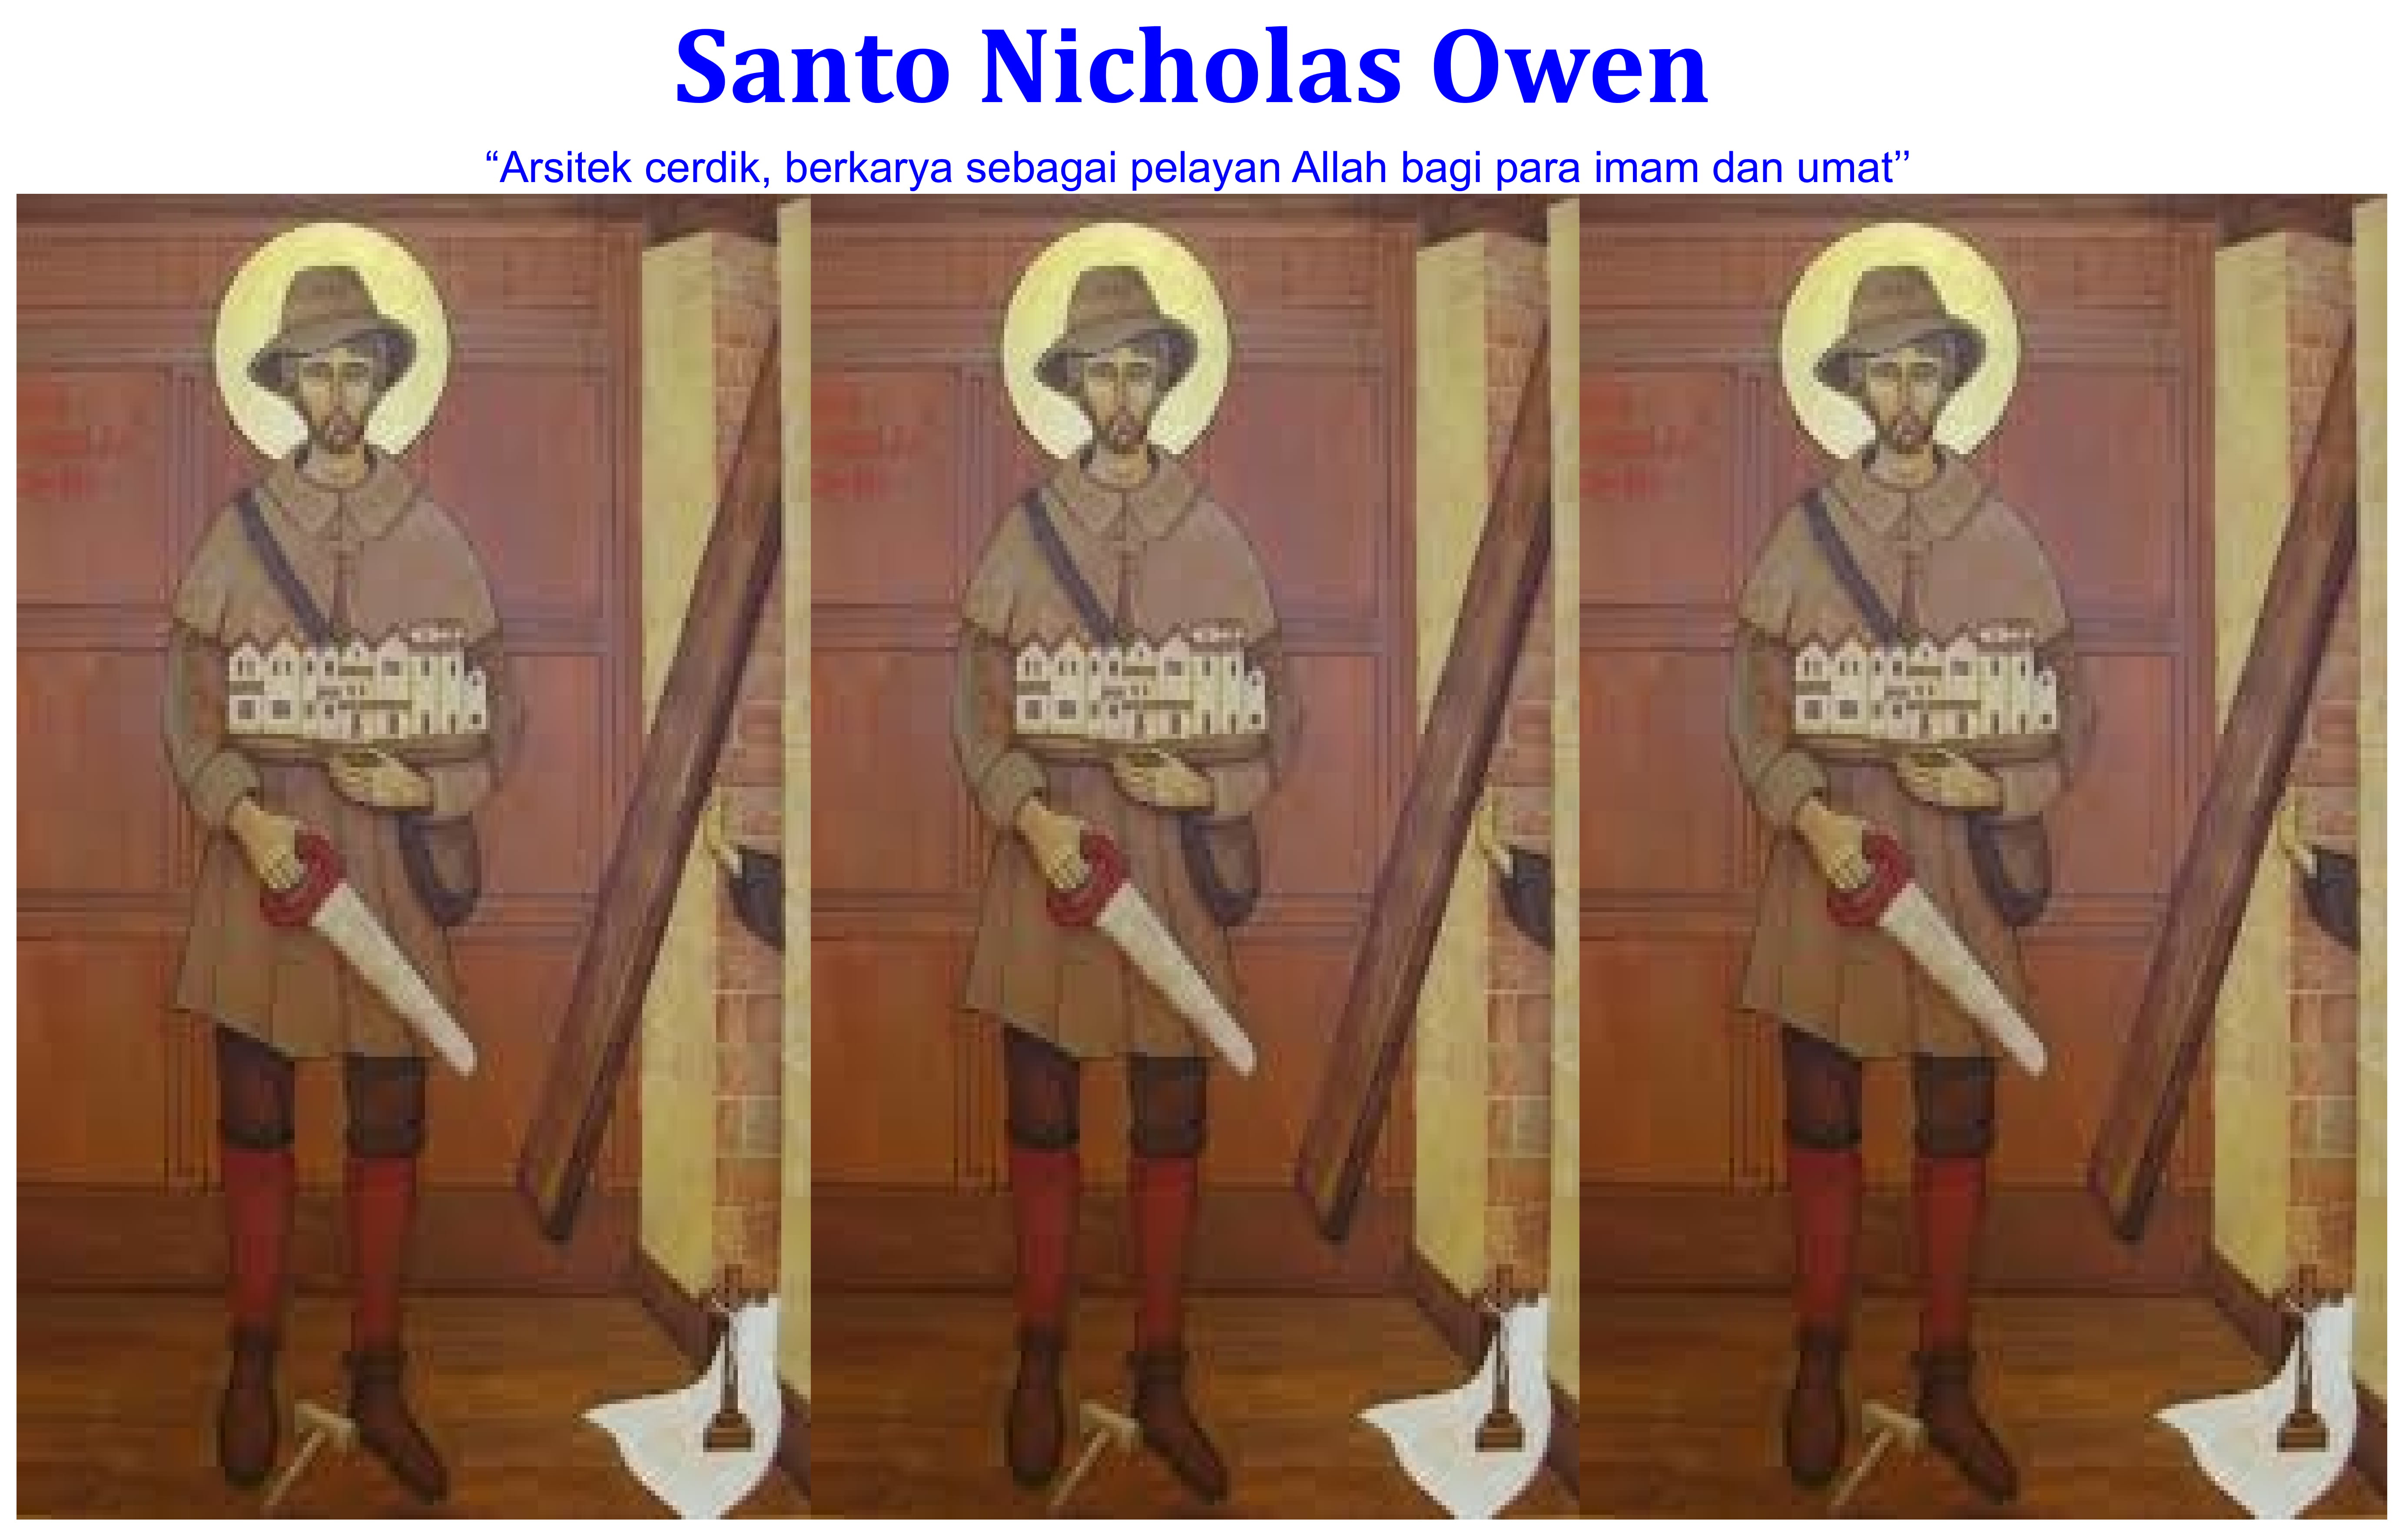 Santo Nicholas Owen